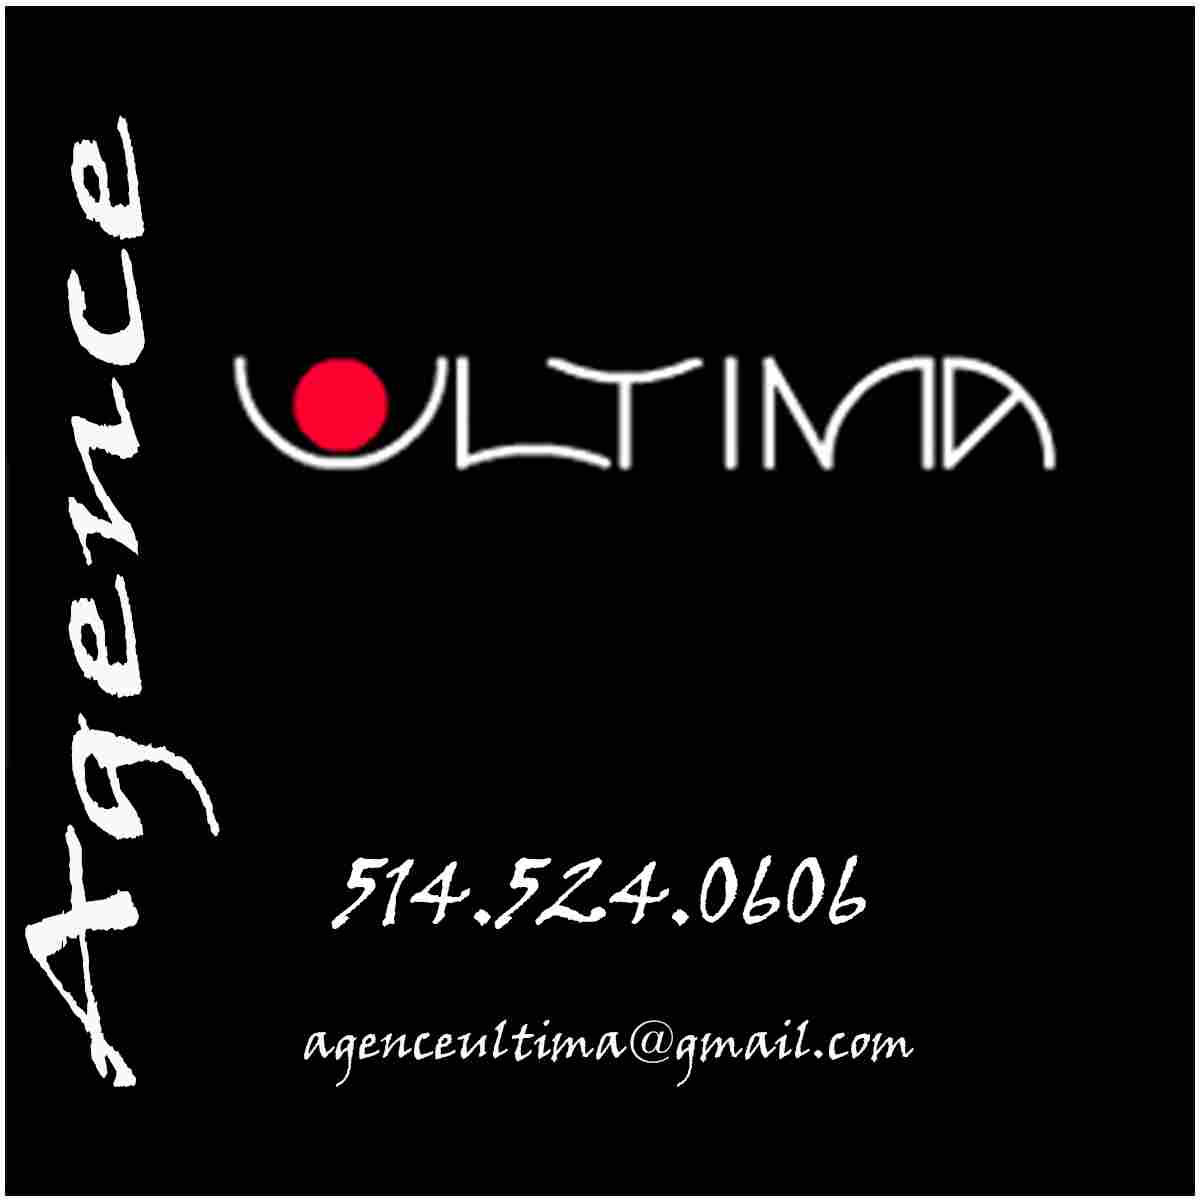 Agence Ultima